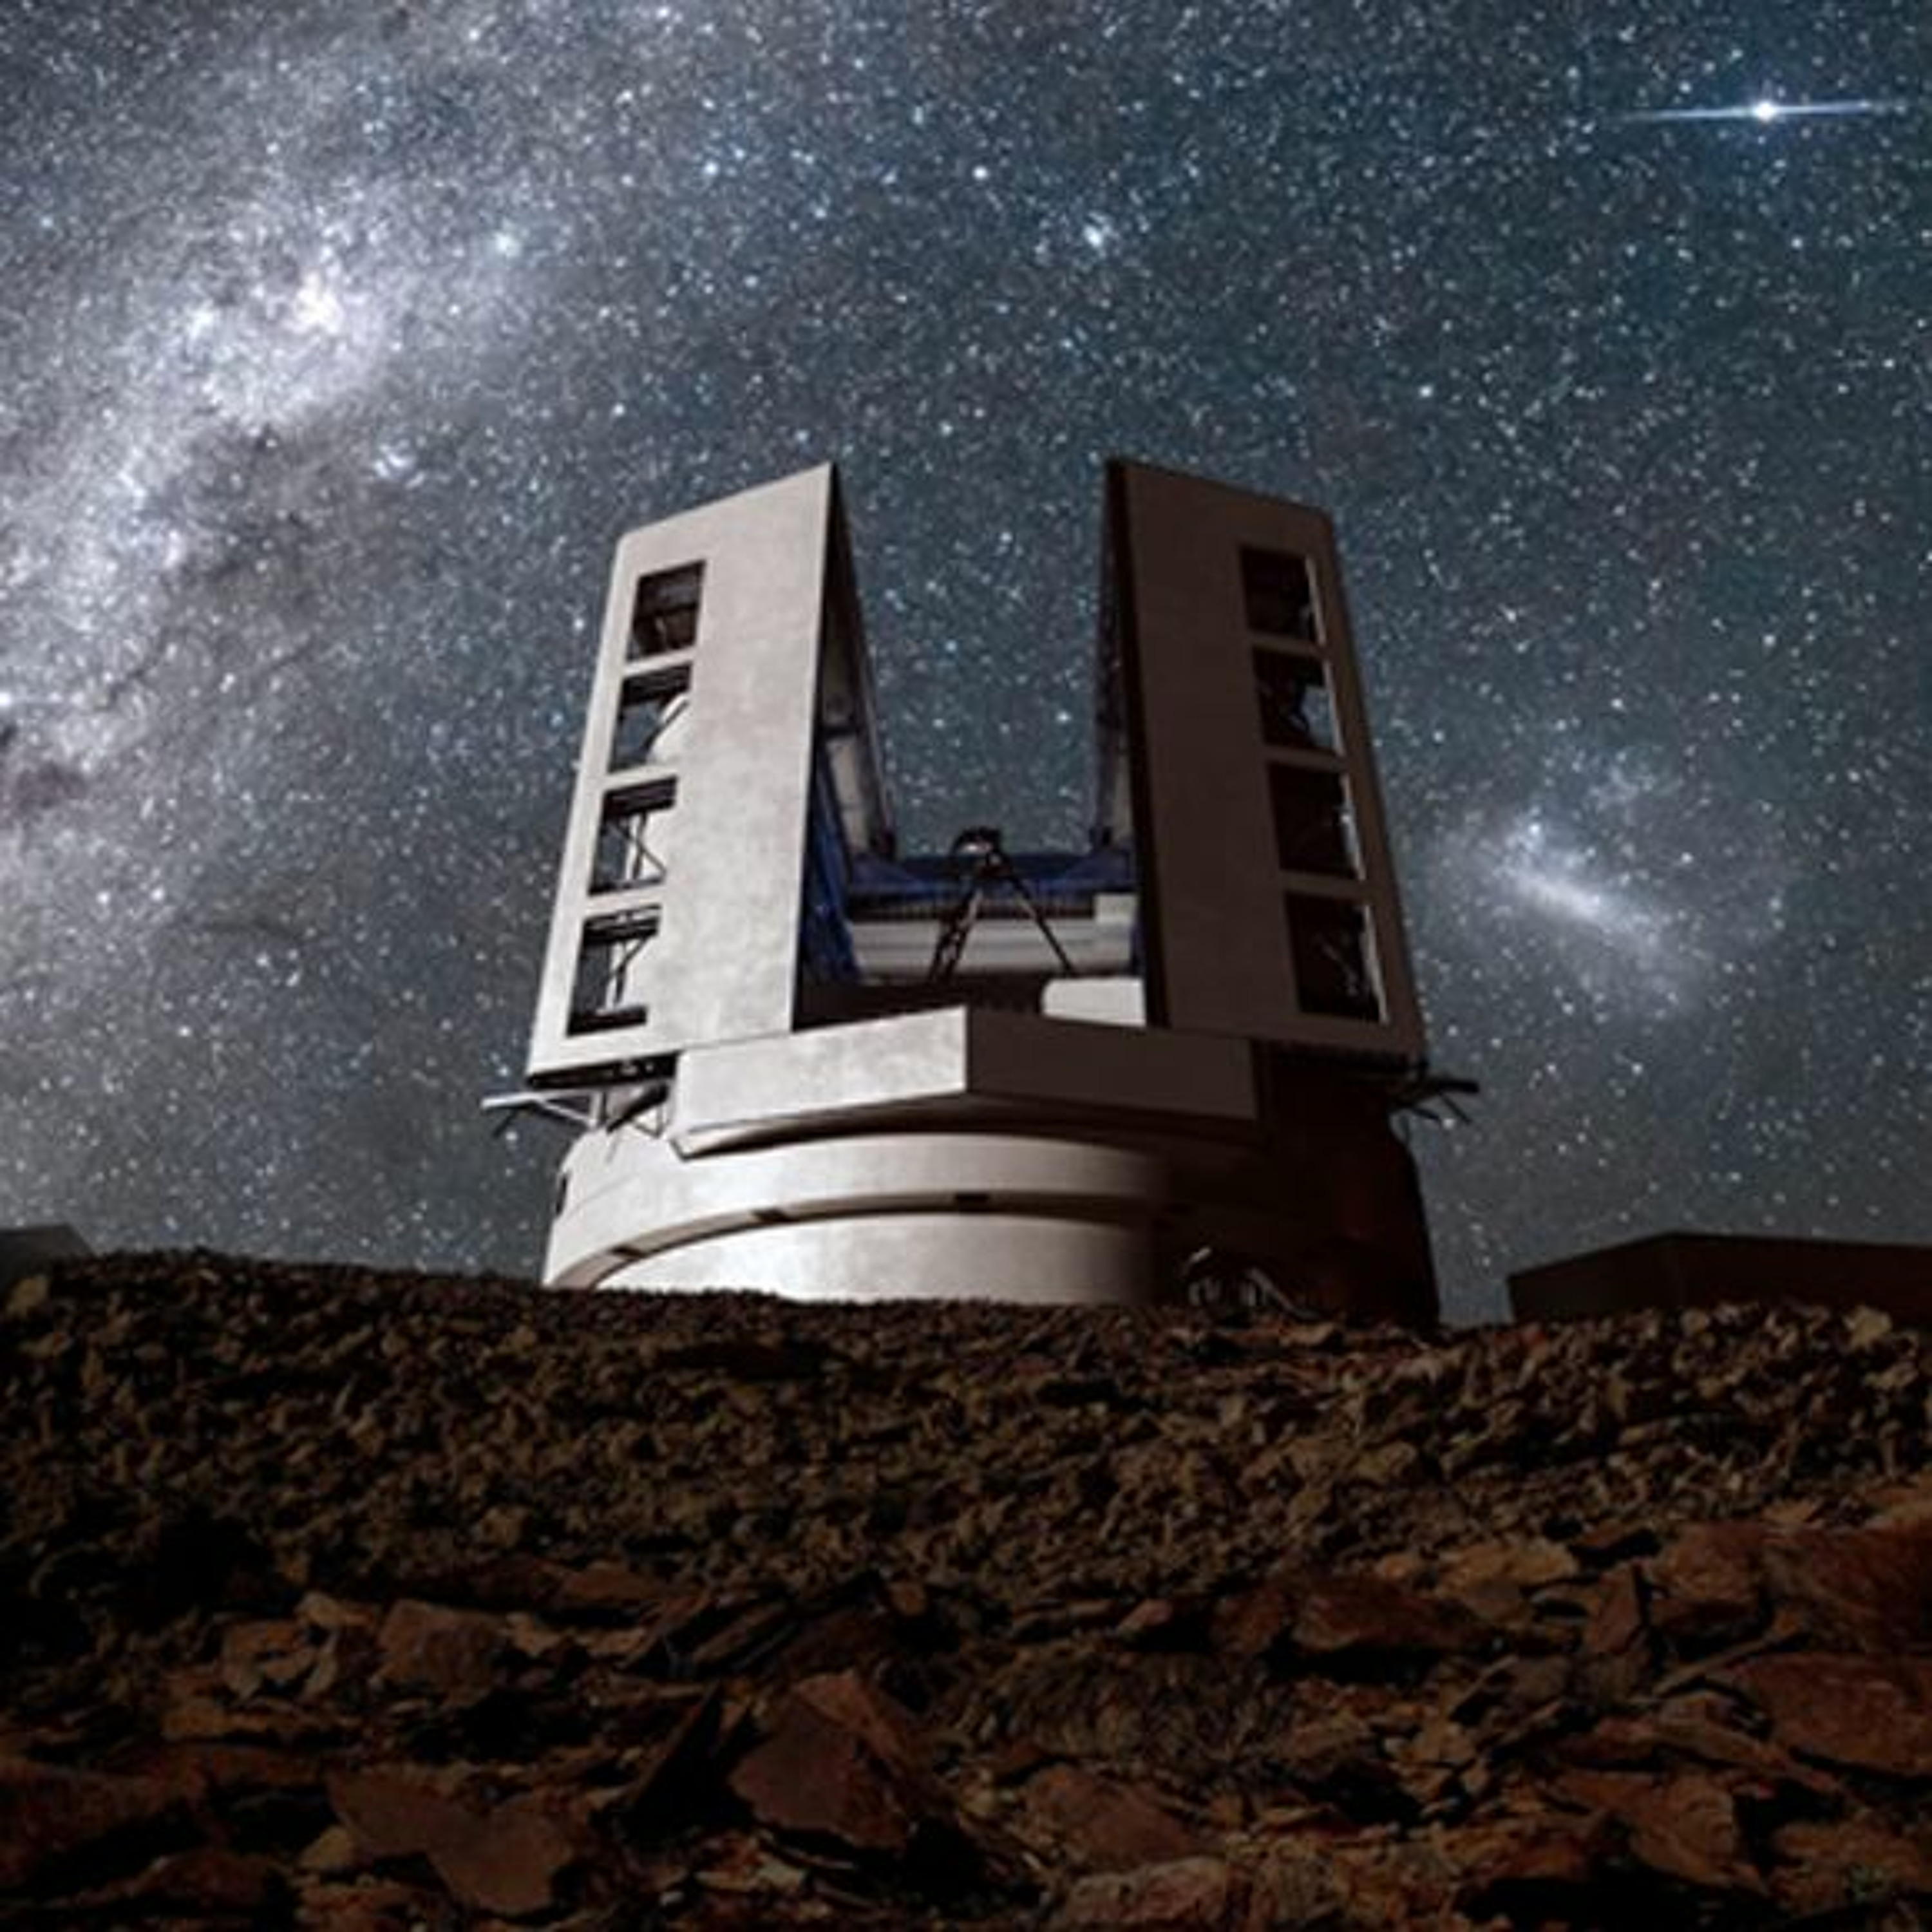 הטלסקופ הענקי שישנה את התמונה